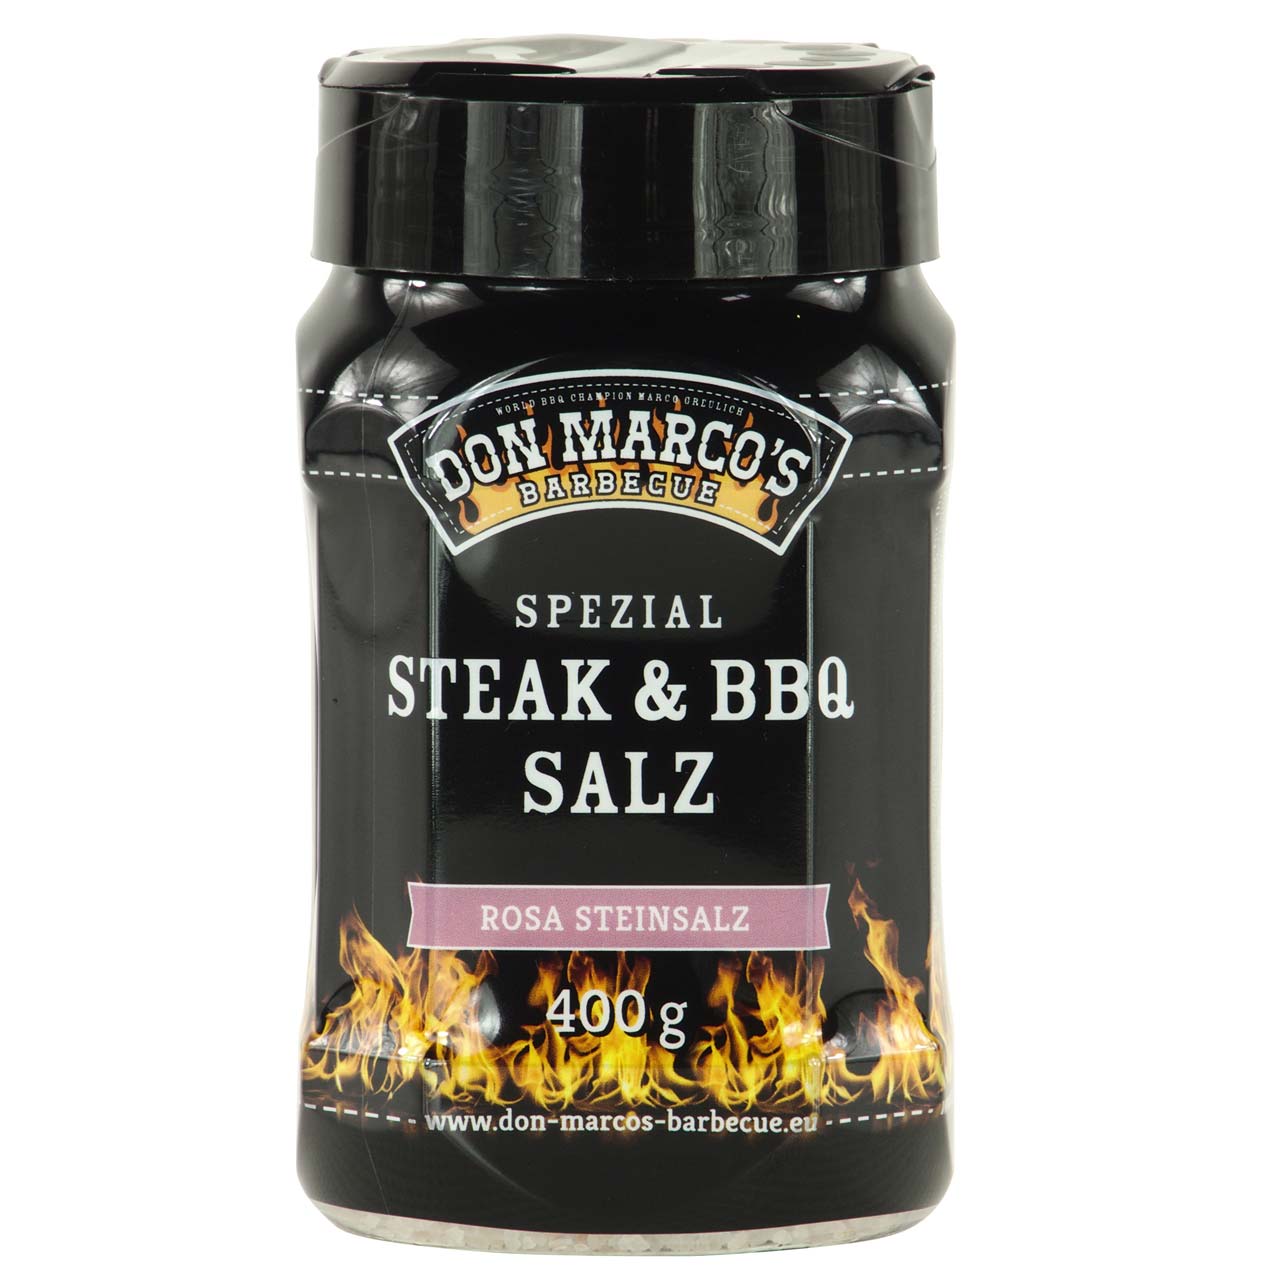 Don Marco's Spezial Steak & BBQ Salz "Rosa Steinsalz" 400 g Streuer